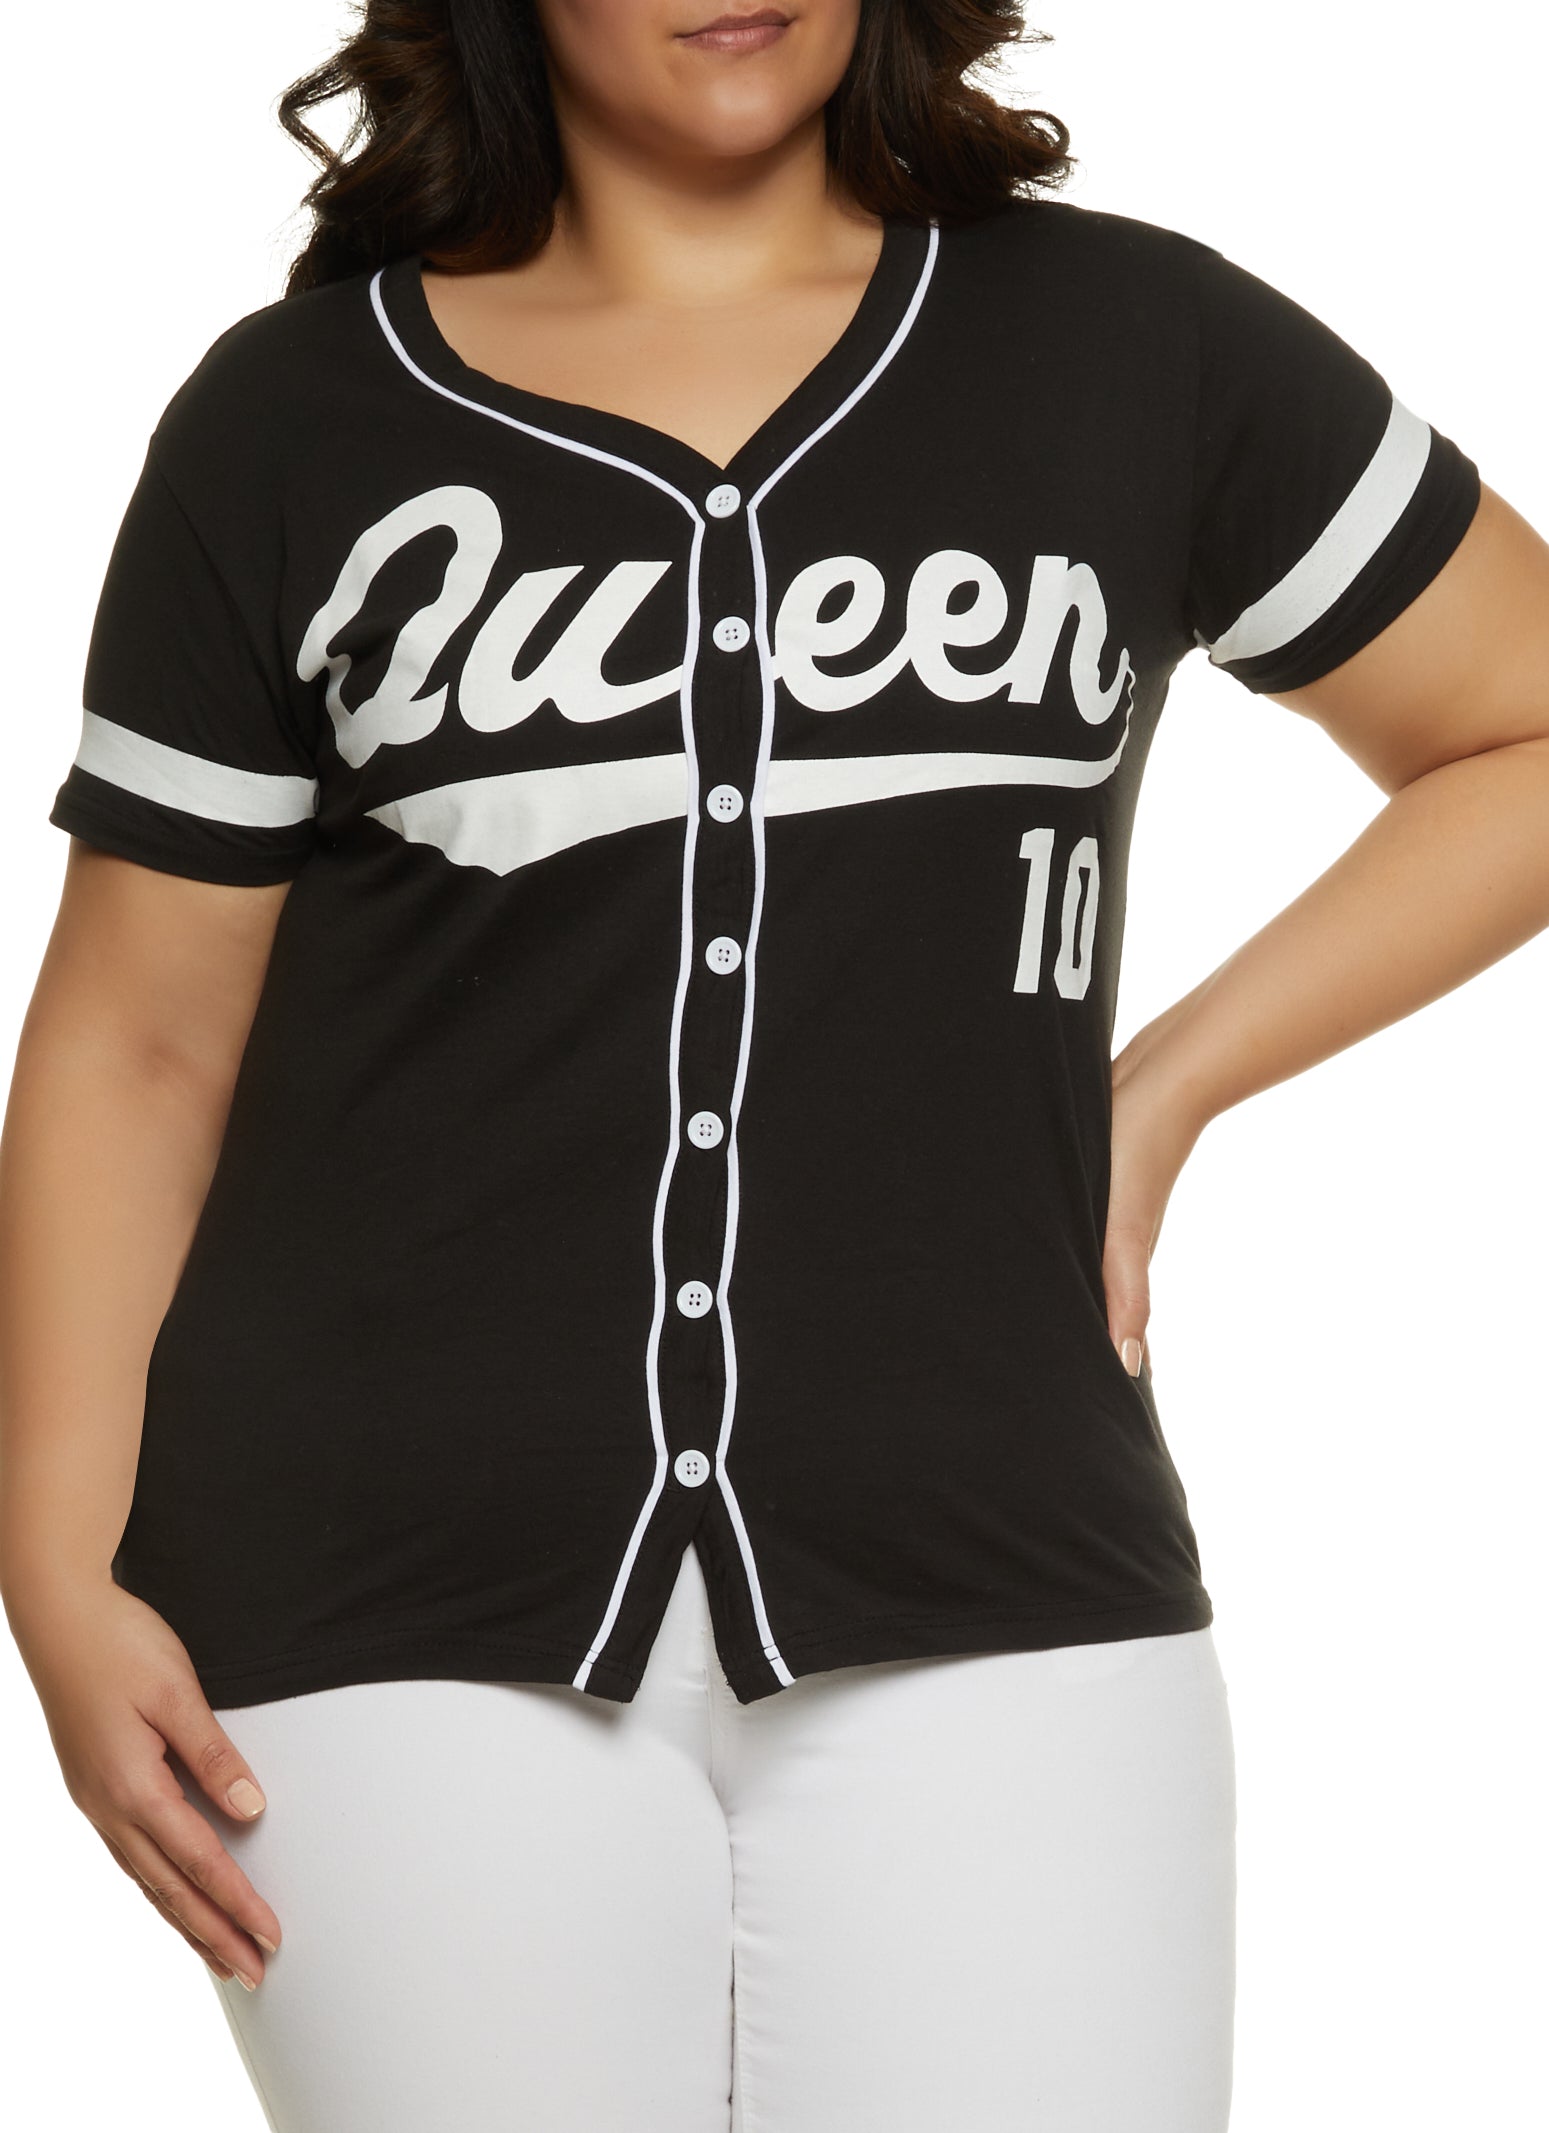 womens baseball jersey outfit